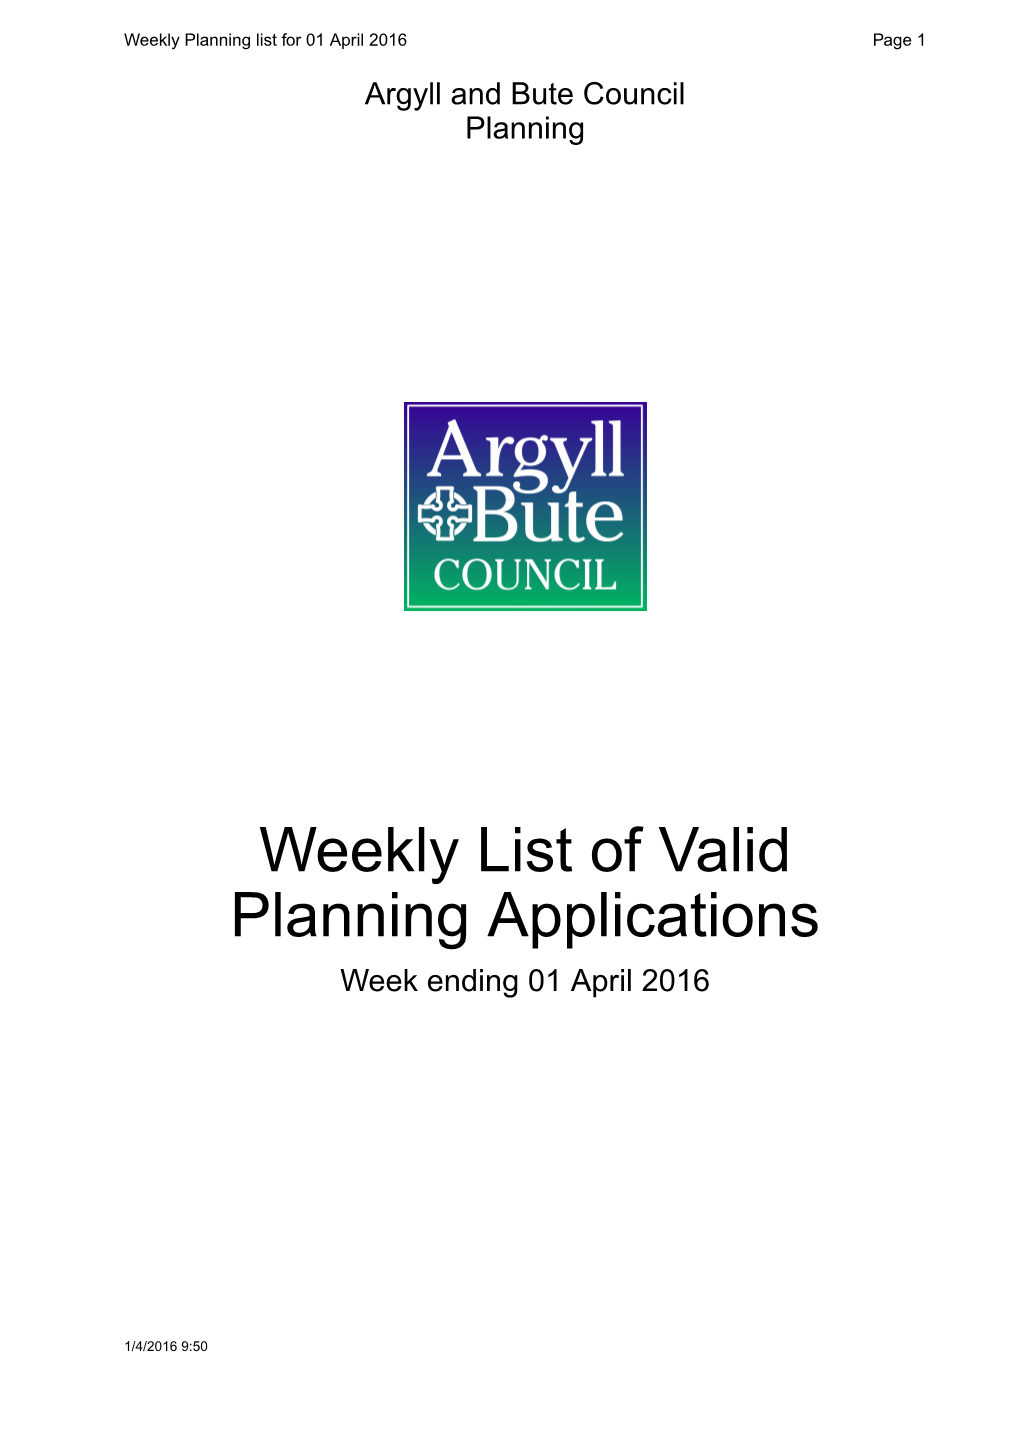 Weekly List of Valid Planning Applications Week Ending 01 April 2016